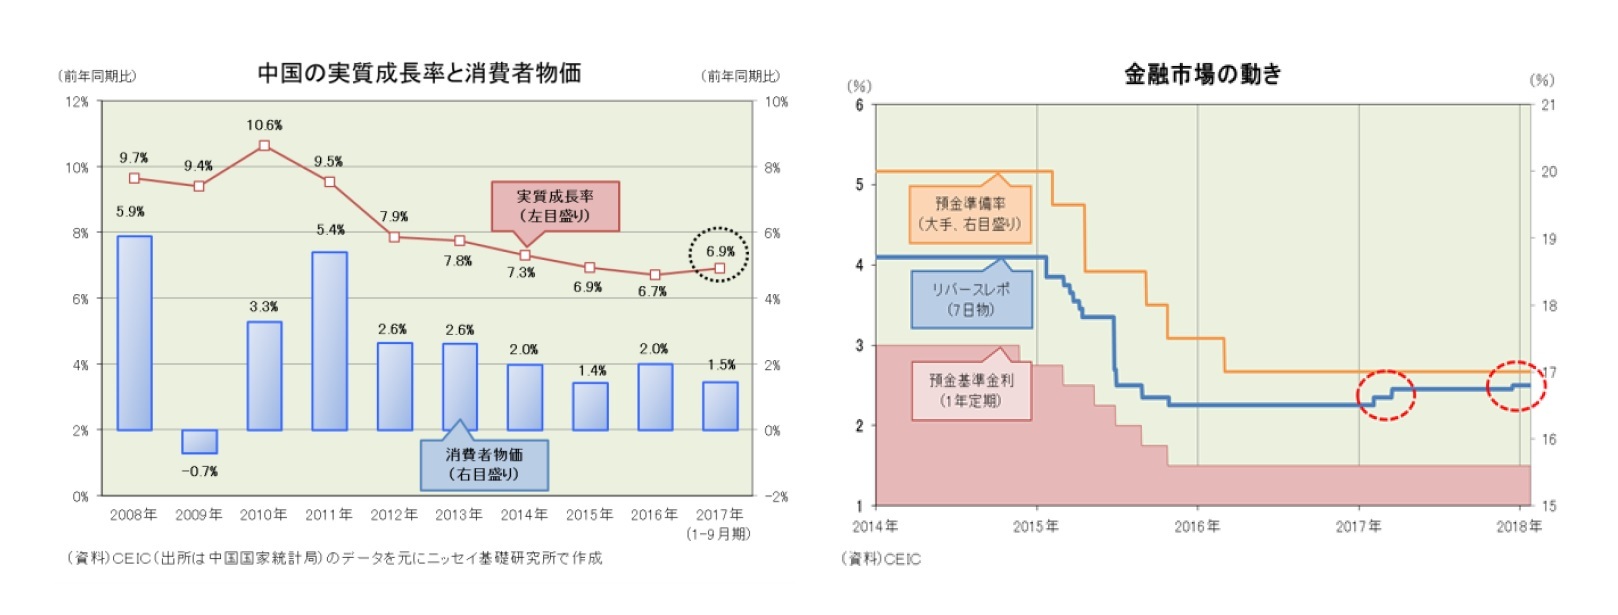 中国の実質成長率と消費者物価/金融市場の動き